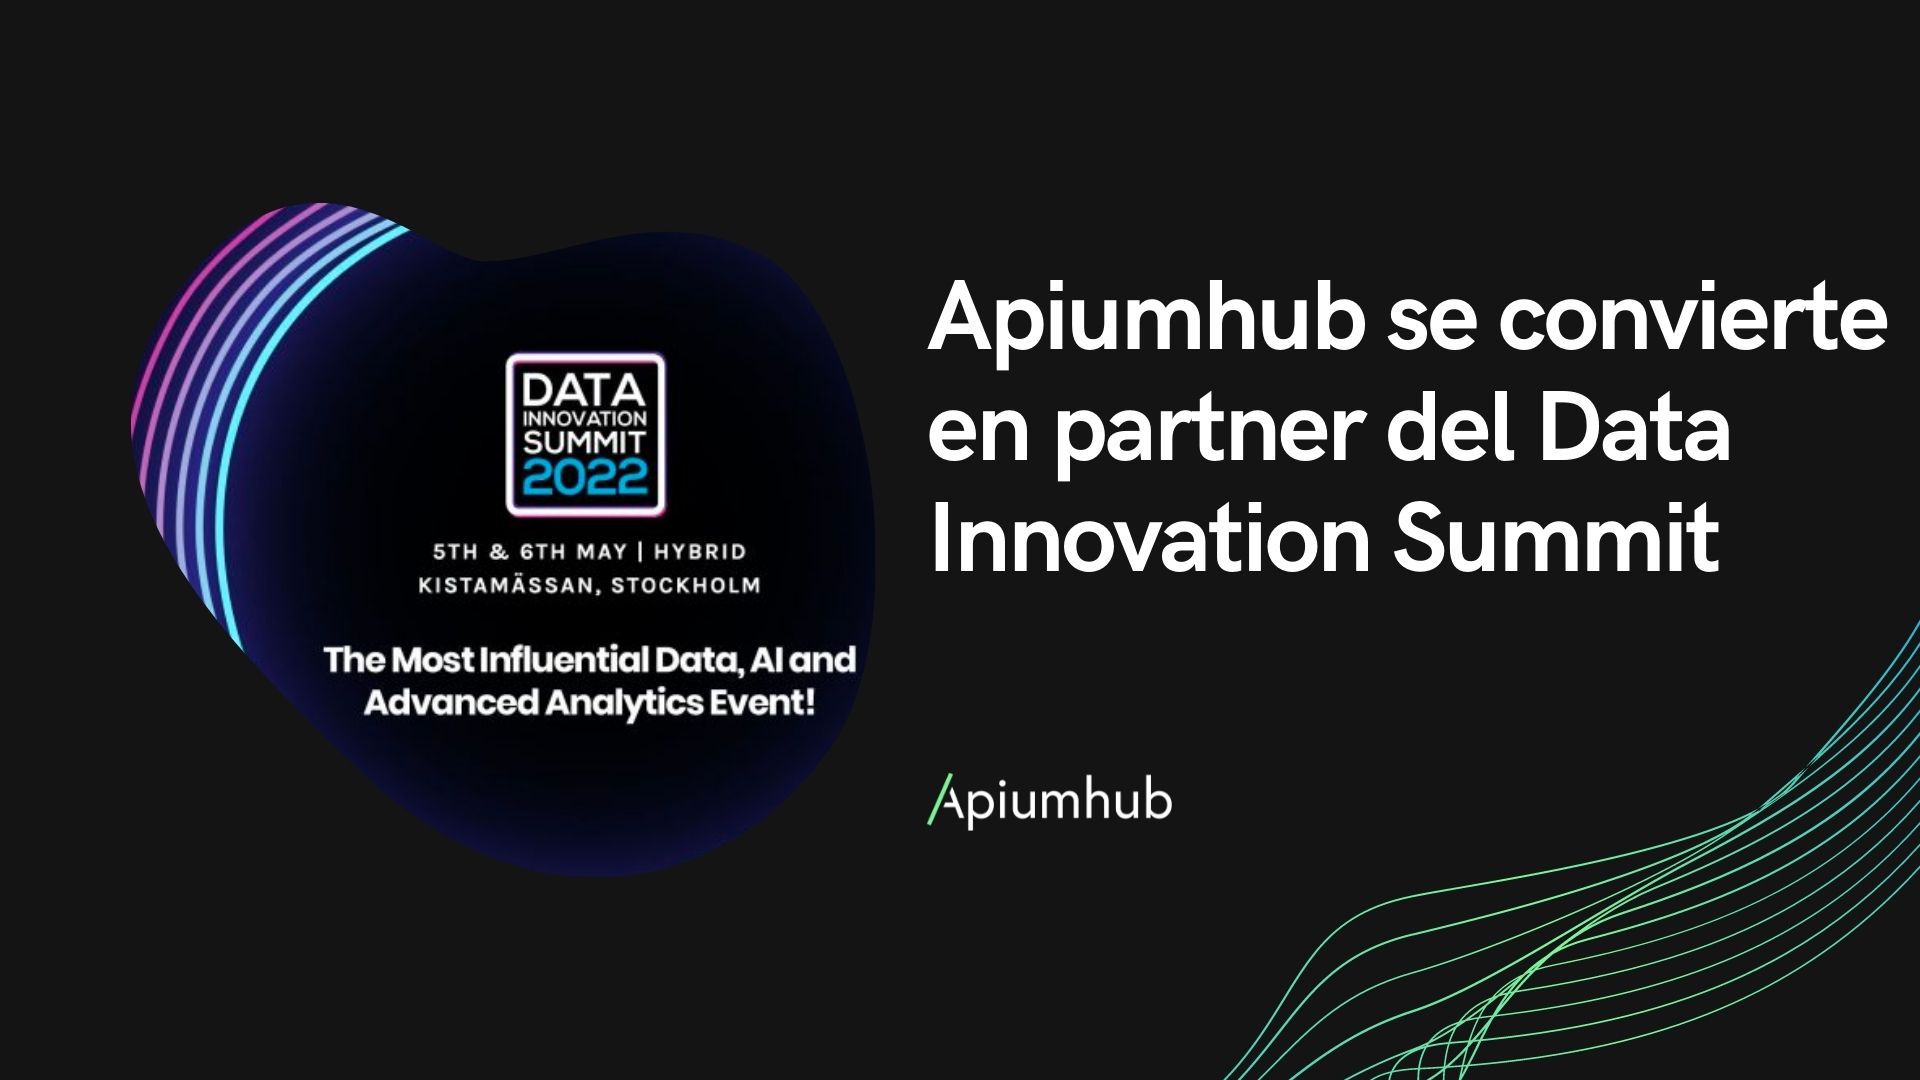 Apiumhub se convierte en partner del Data Innovation Summit